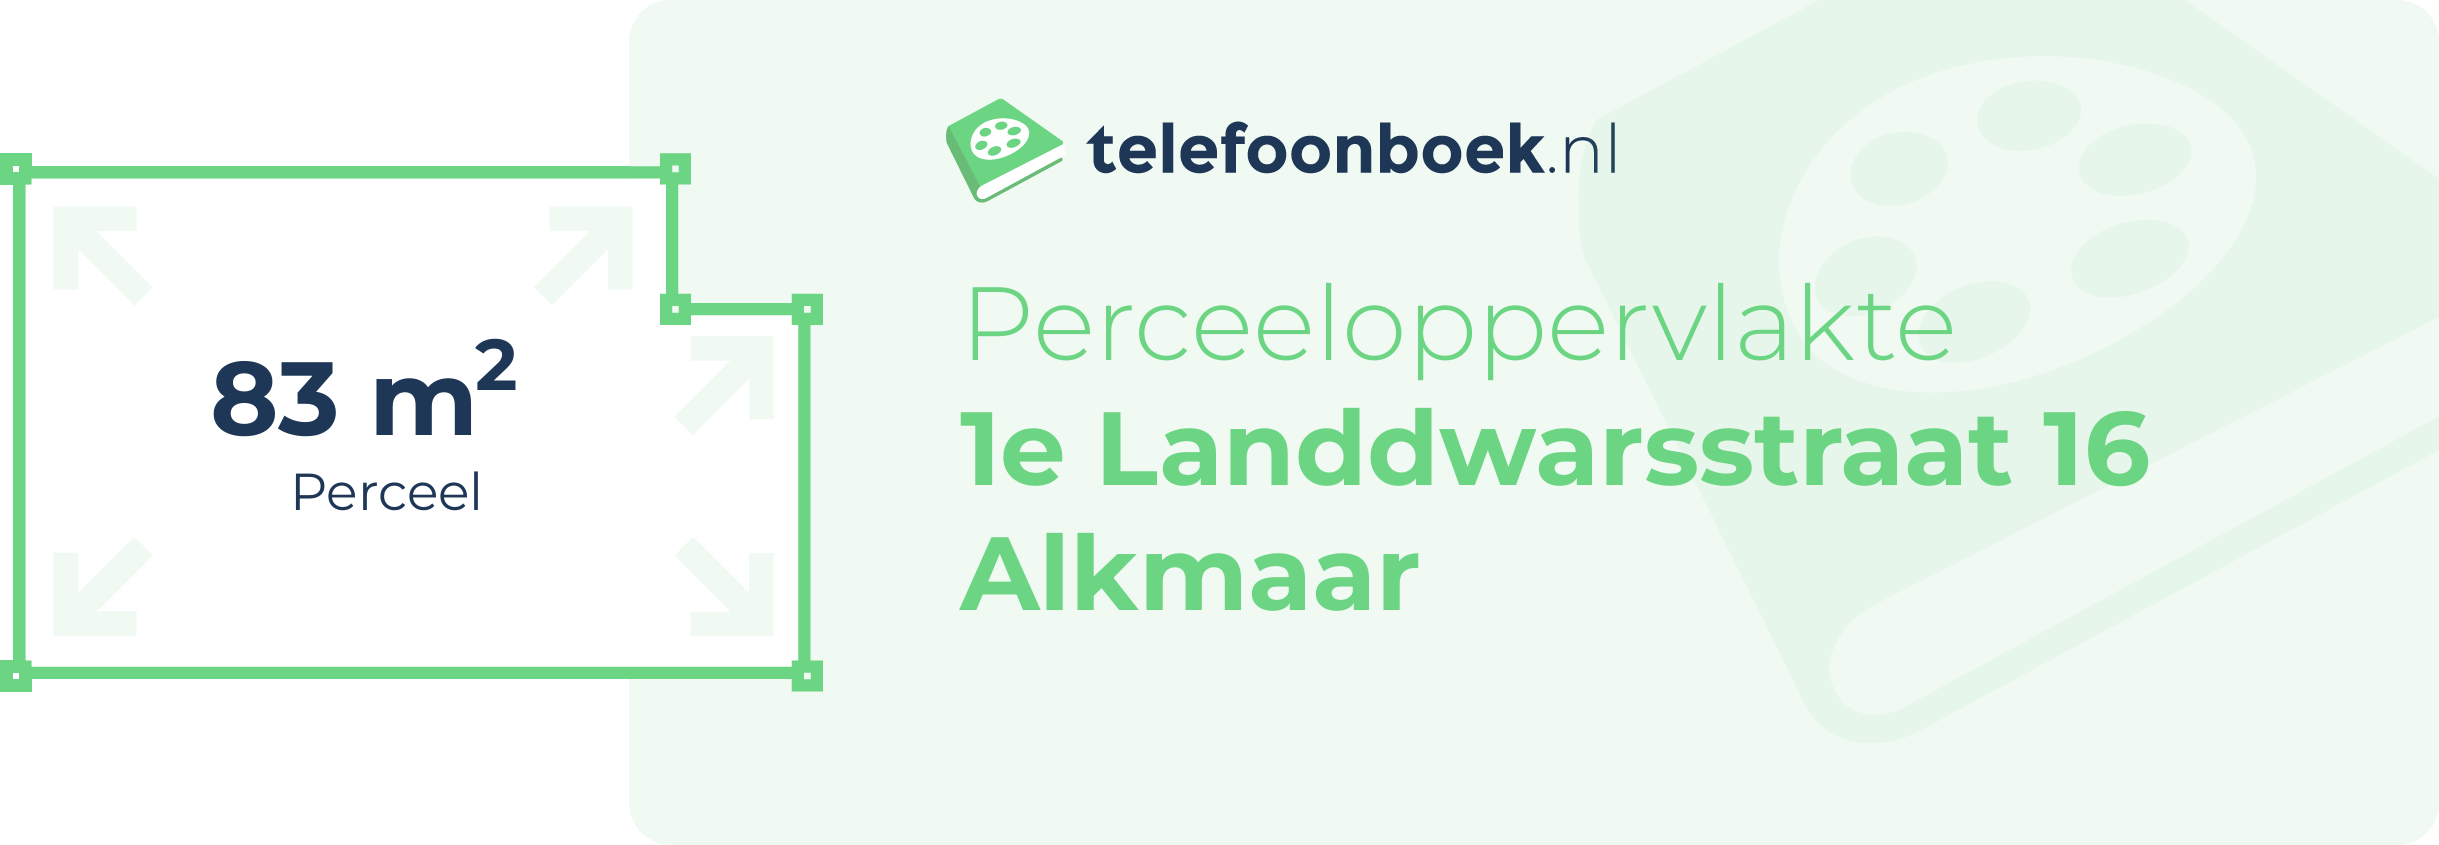 Perceeloppervlakte 1e Landdwarsstraat 16 Alkmaar